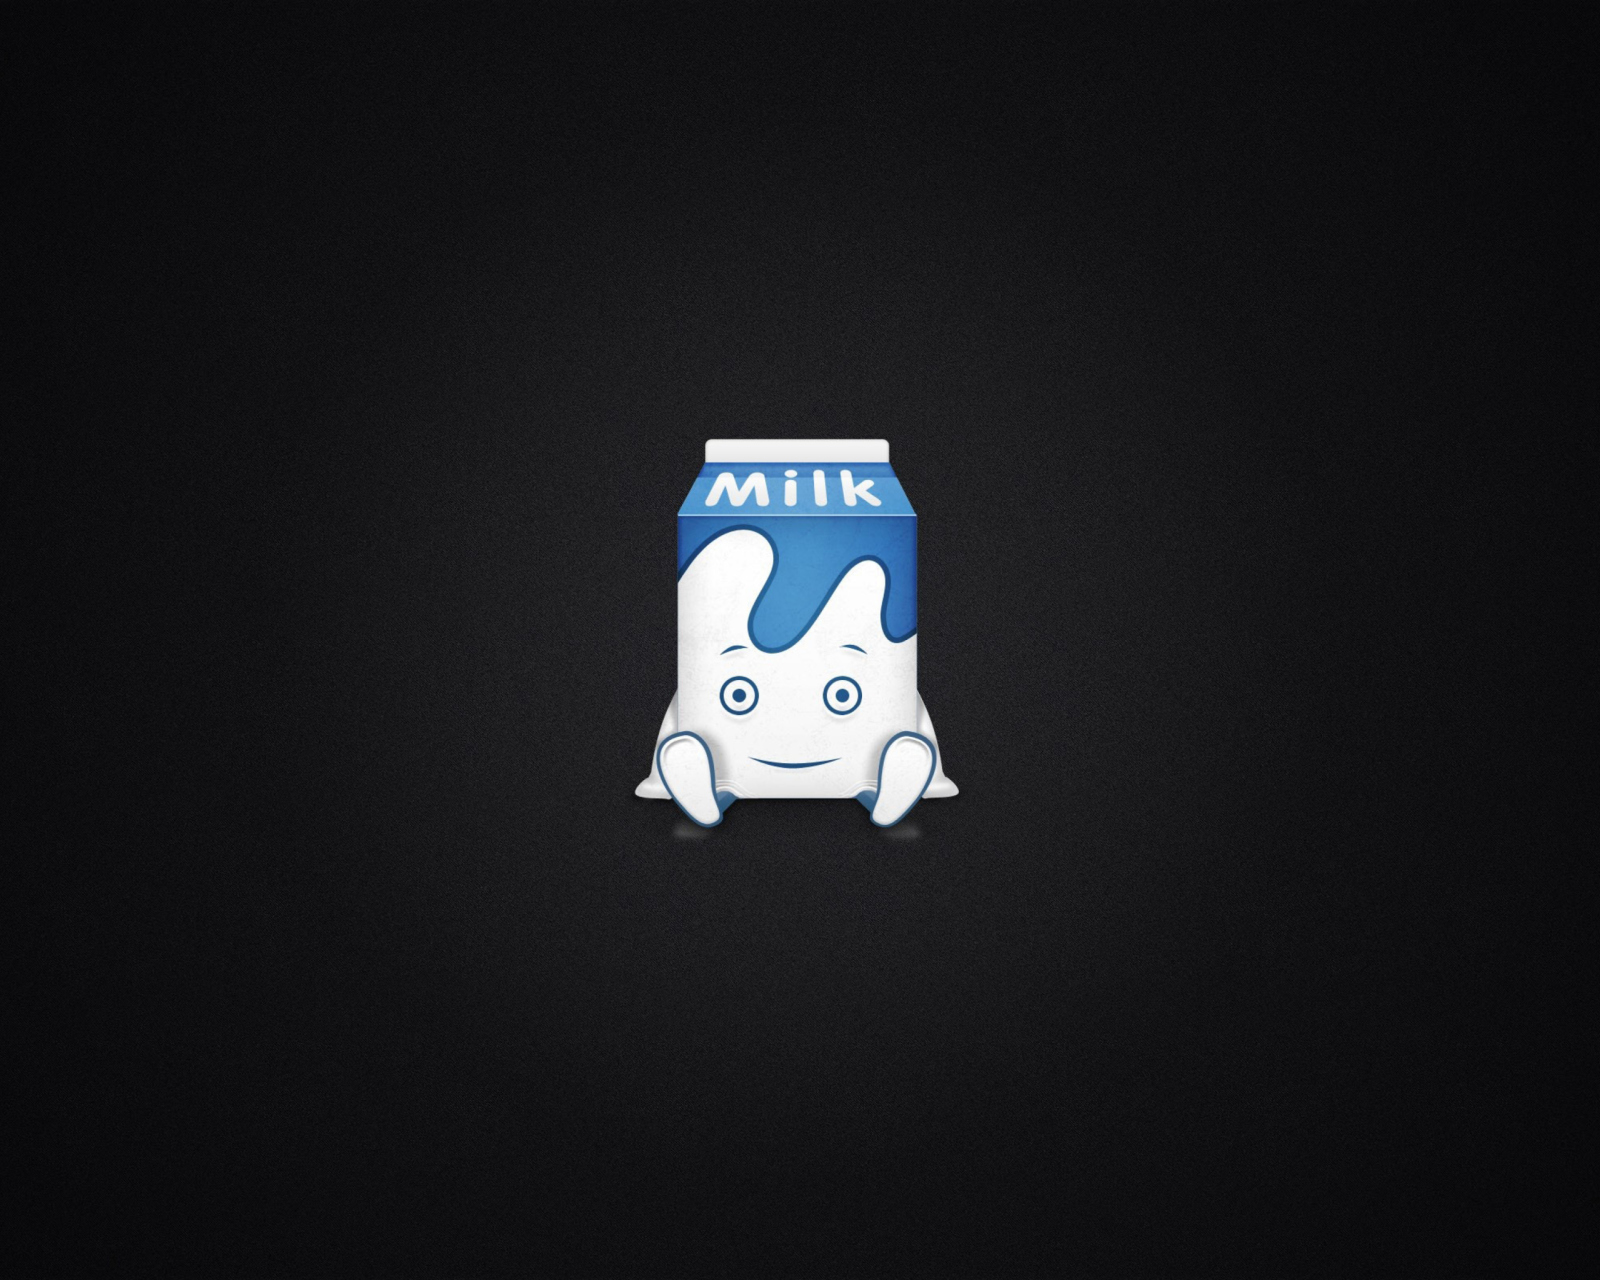 Sfondi Funny Milk Pack 1600x1280